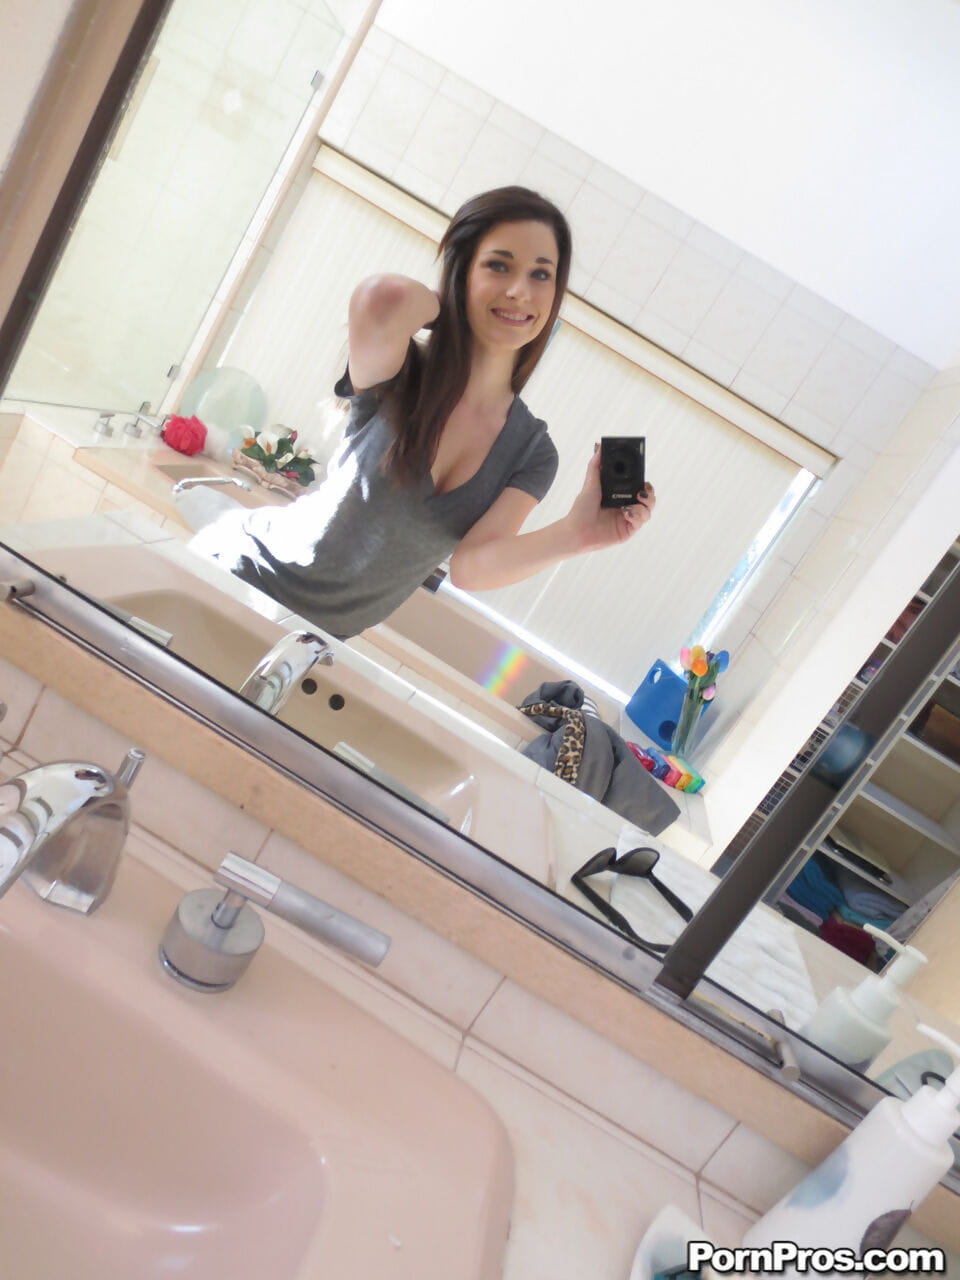 Lacey channing prangt Ihr Natürliche Titten bekommt Nackt und Nimmt sexy selfies